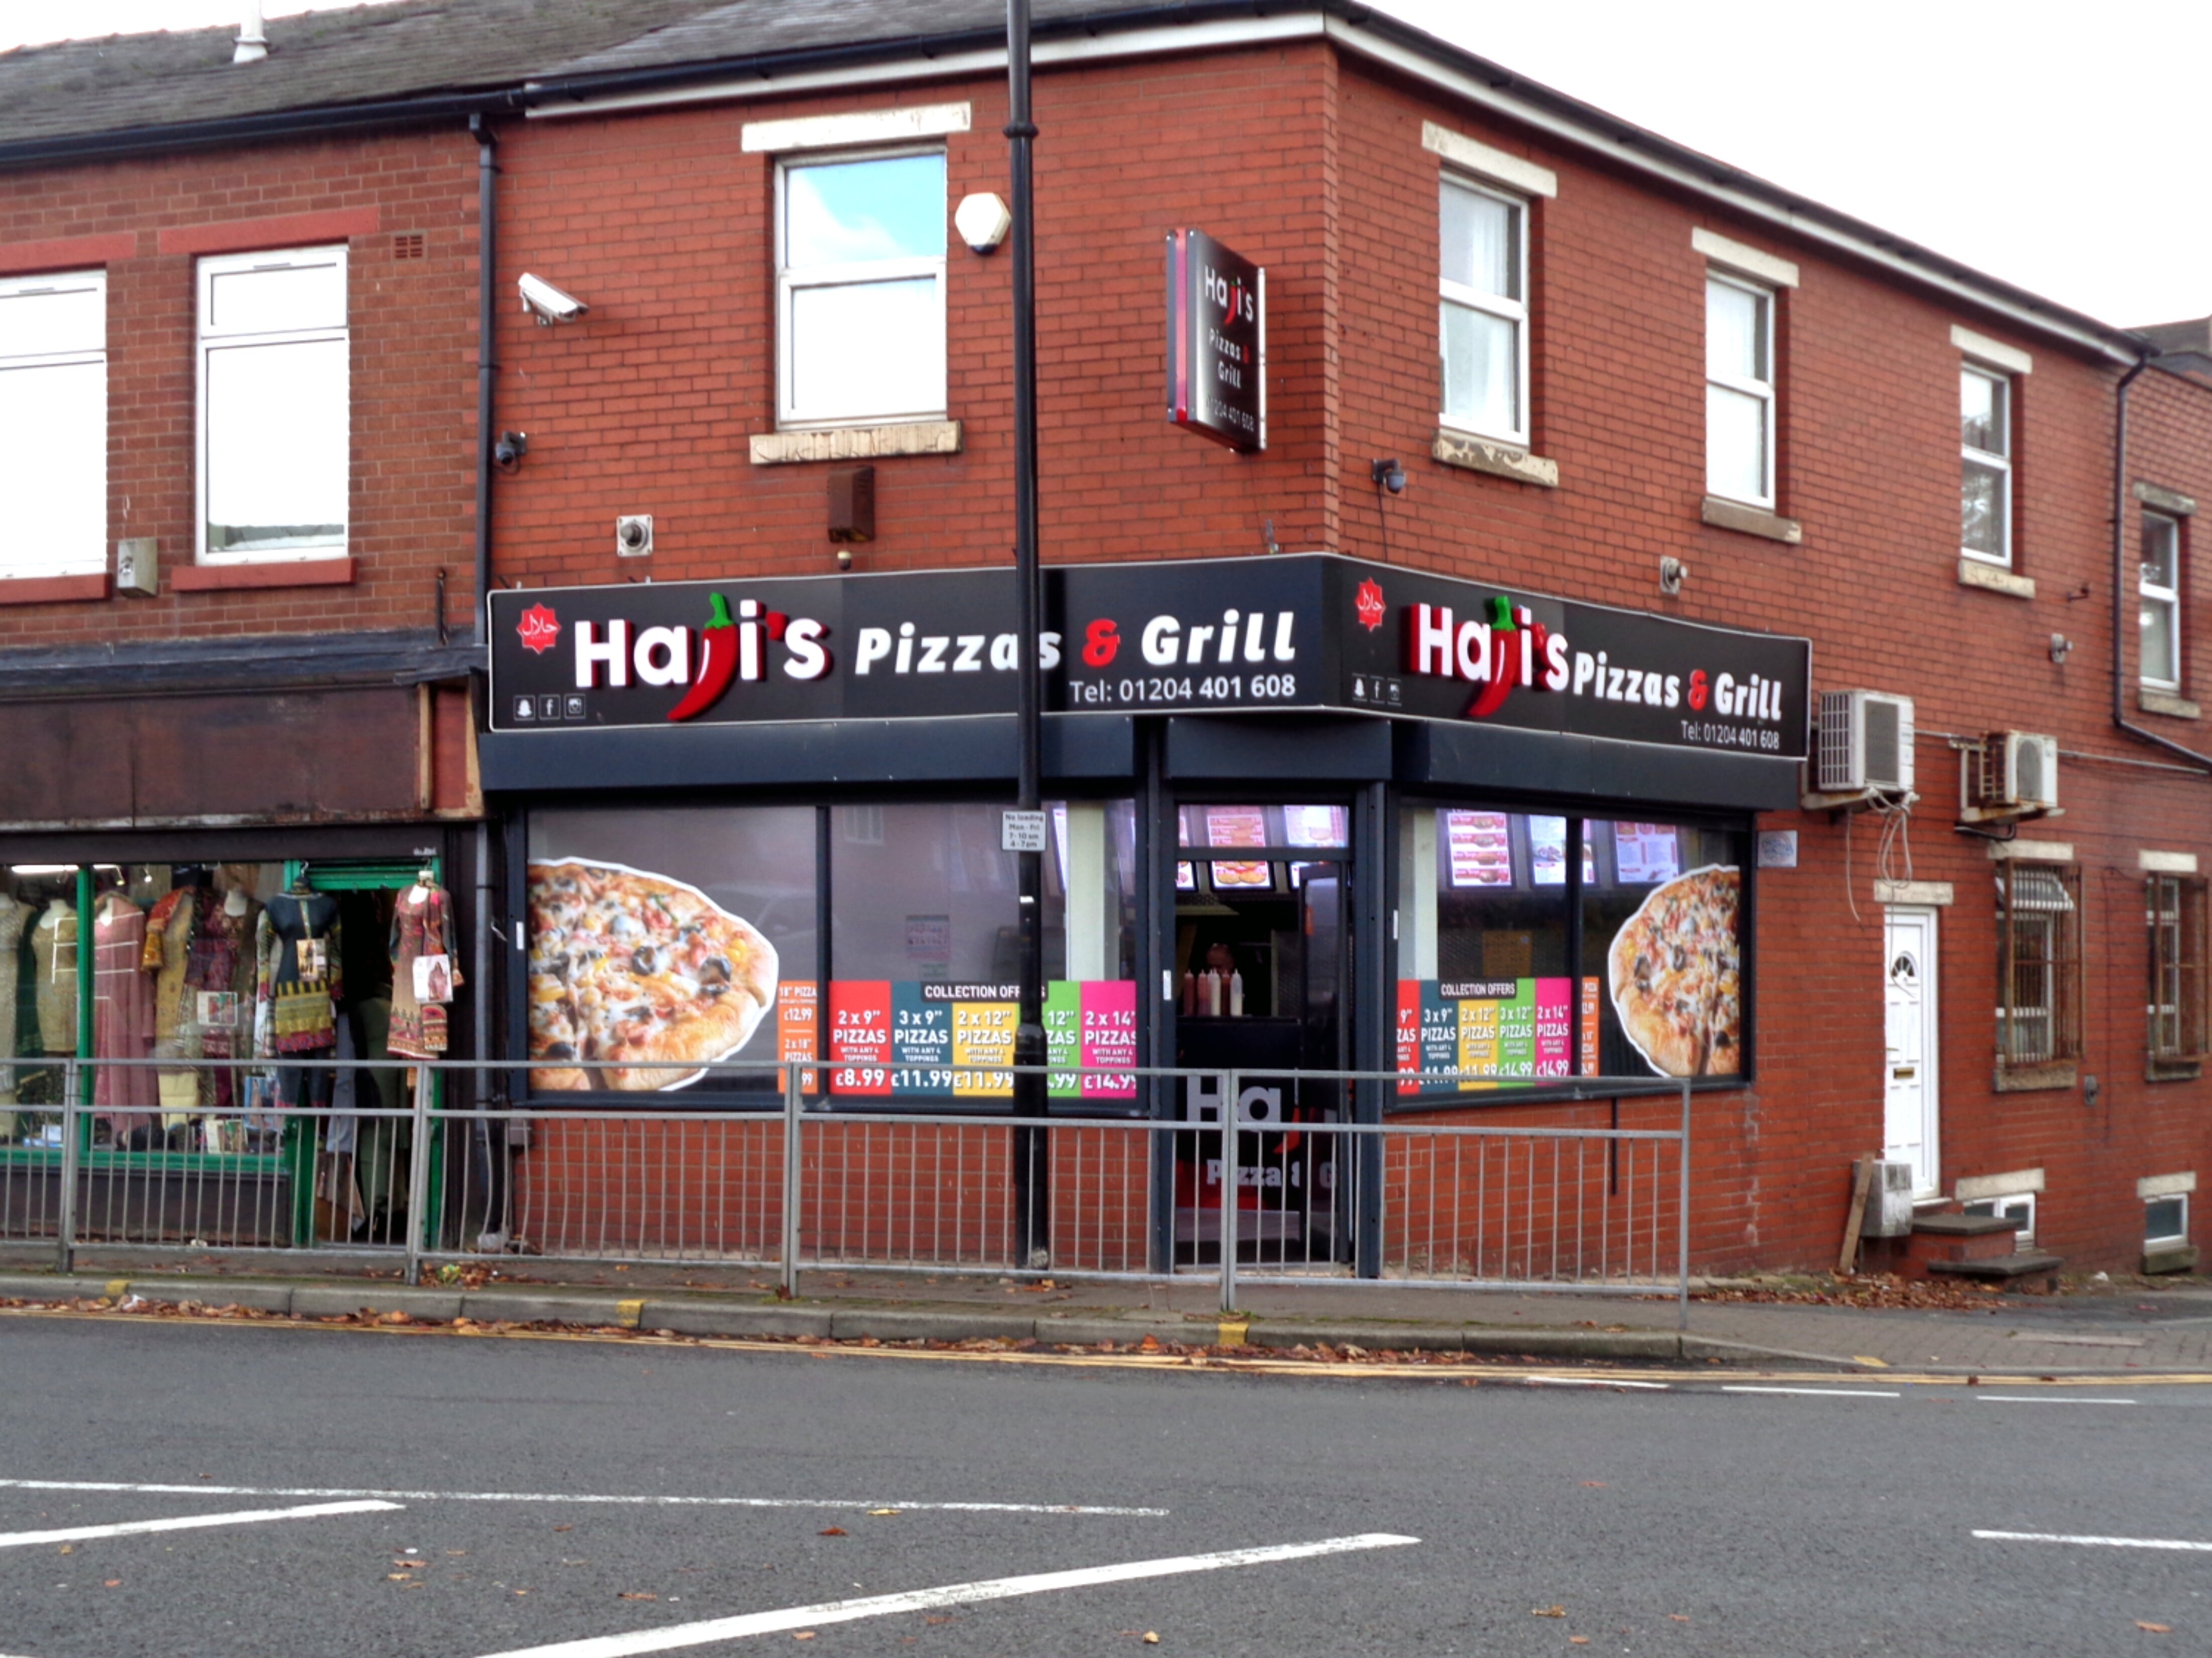 Haji's Pizza & Grill